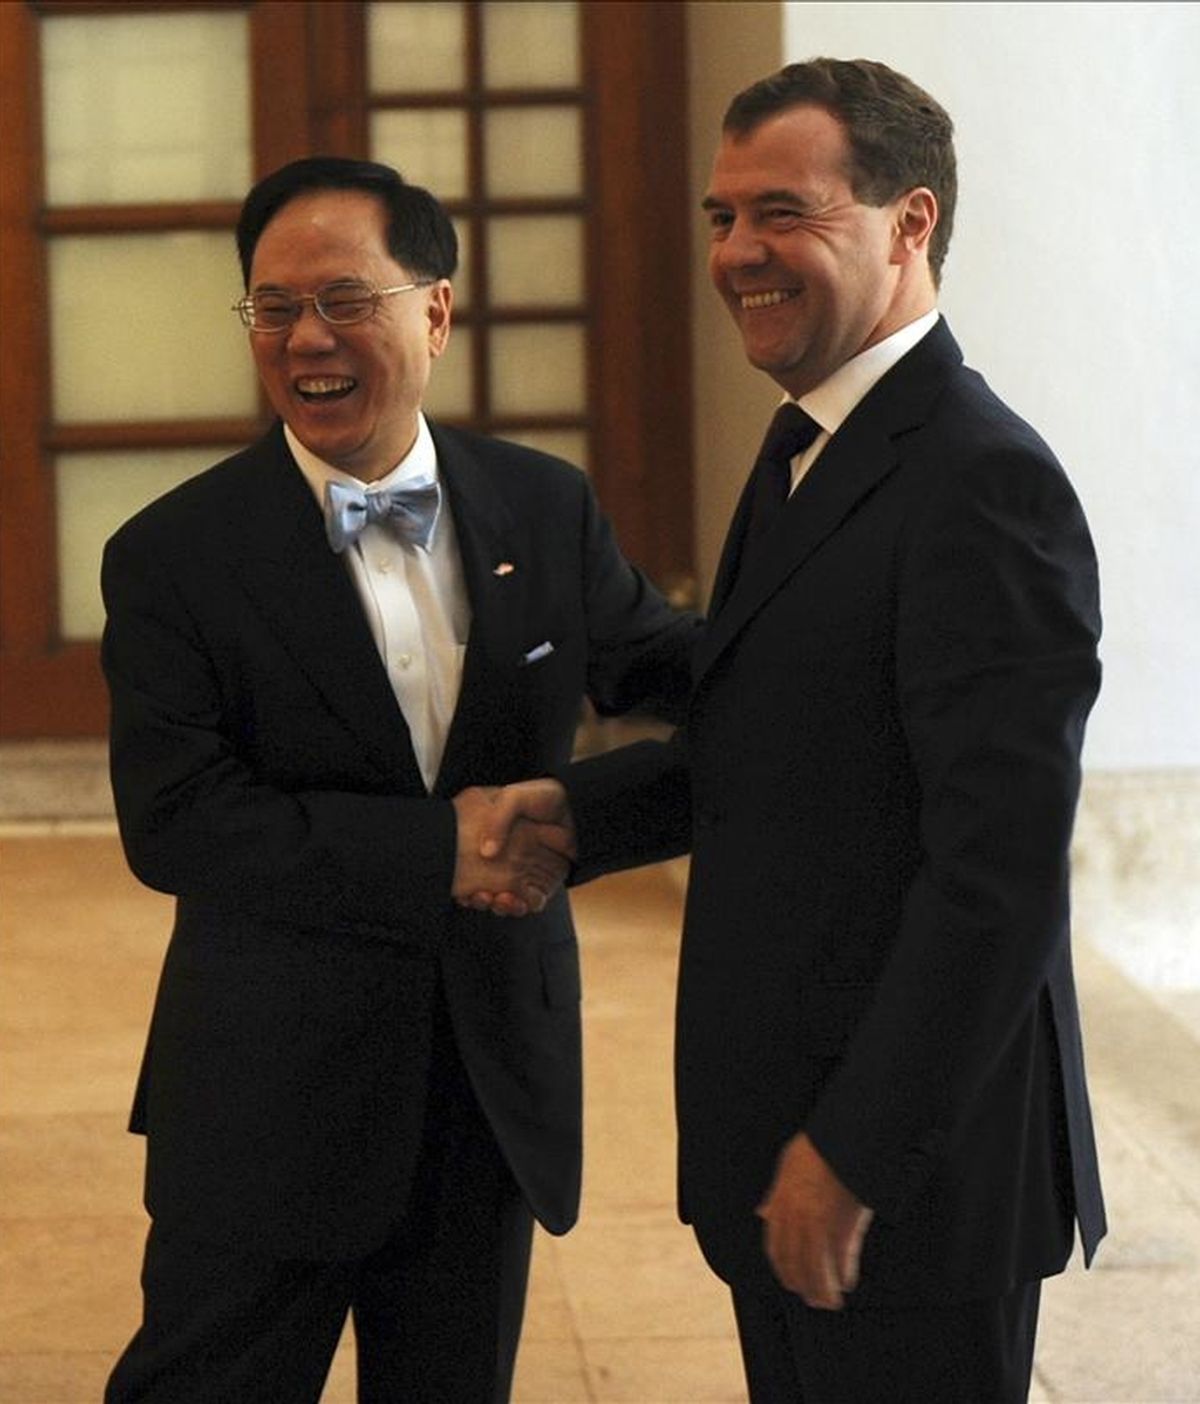 El jefe ejecutivo de Hong Kong, Donald Tsang (izda), saluda al presidente ruso, Dmitry Medvedev (dcha), en la sede del gobierno en Hong Kong (China) hoy, domingo, 17 de abril de 2011. EFE